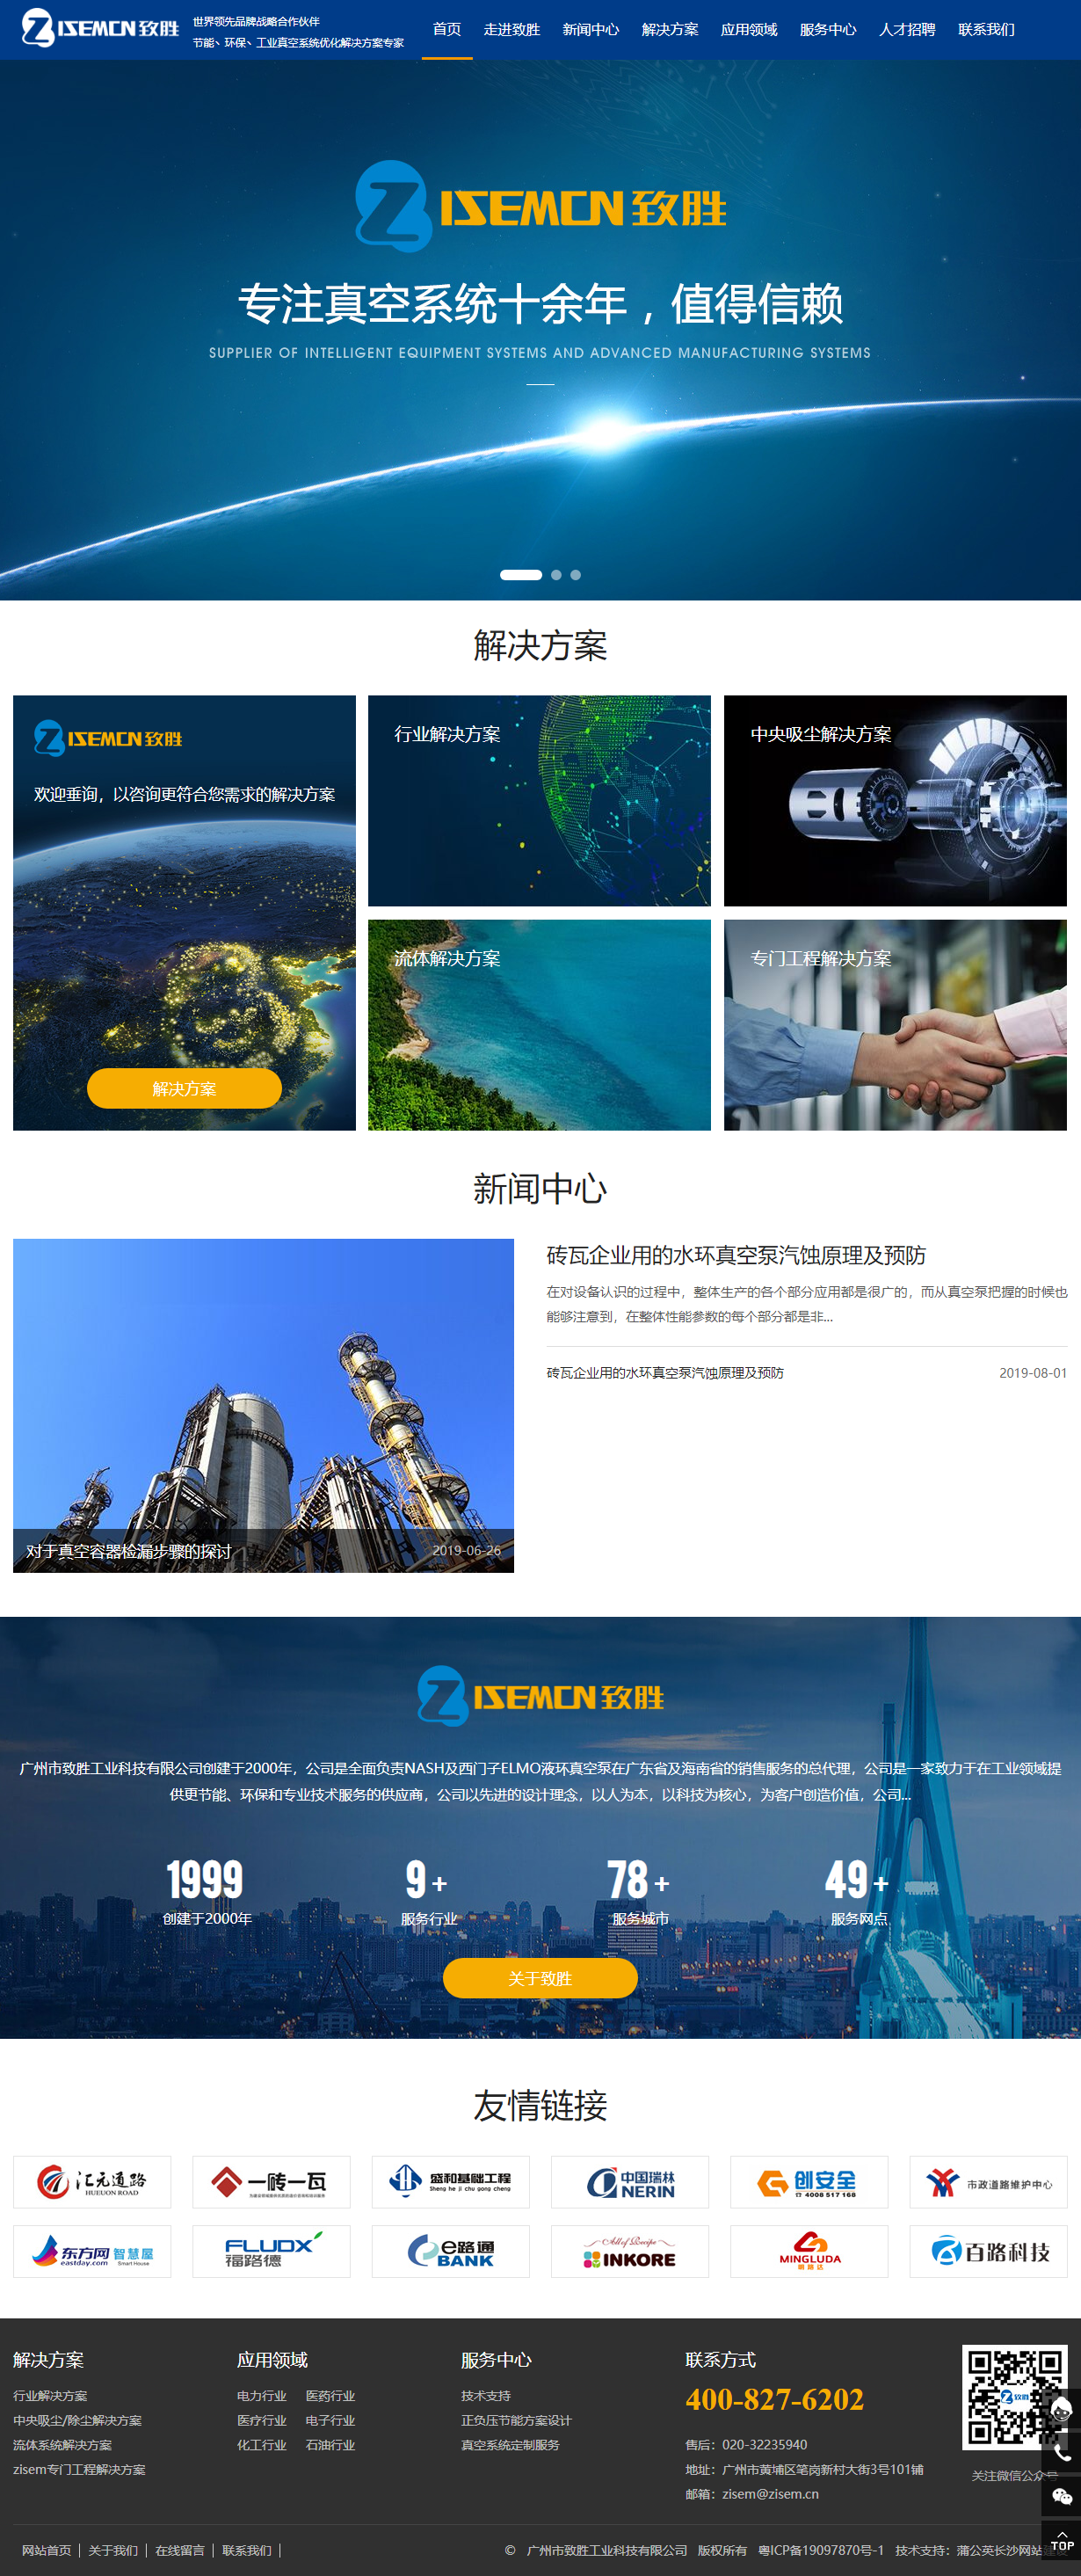 广州市致胜工业科技有限公司网站案例